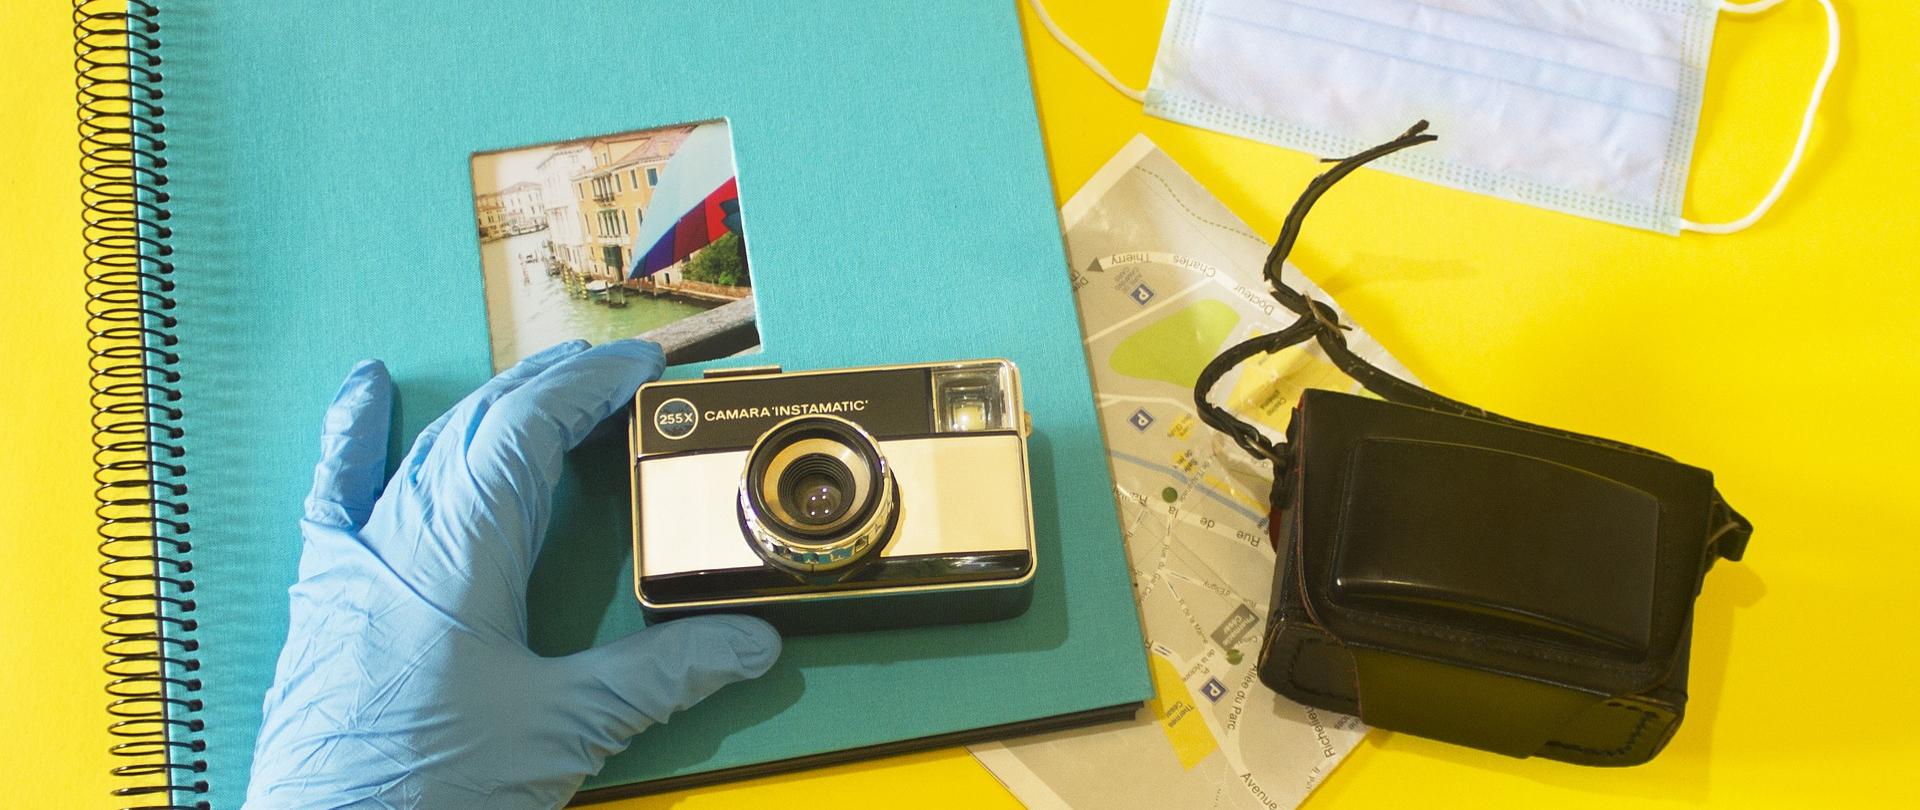 Na żółtym tle leżą: album ze zdjęciami, mapa, maseczka jednorazowa ochronna, etui do aparatu fotograficznego, a ręka w jednorazowej rękawiczce ochronnej trzyma aparat fotograficzny nad albumem do zdjęć 